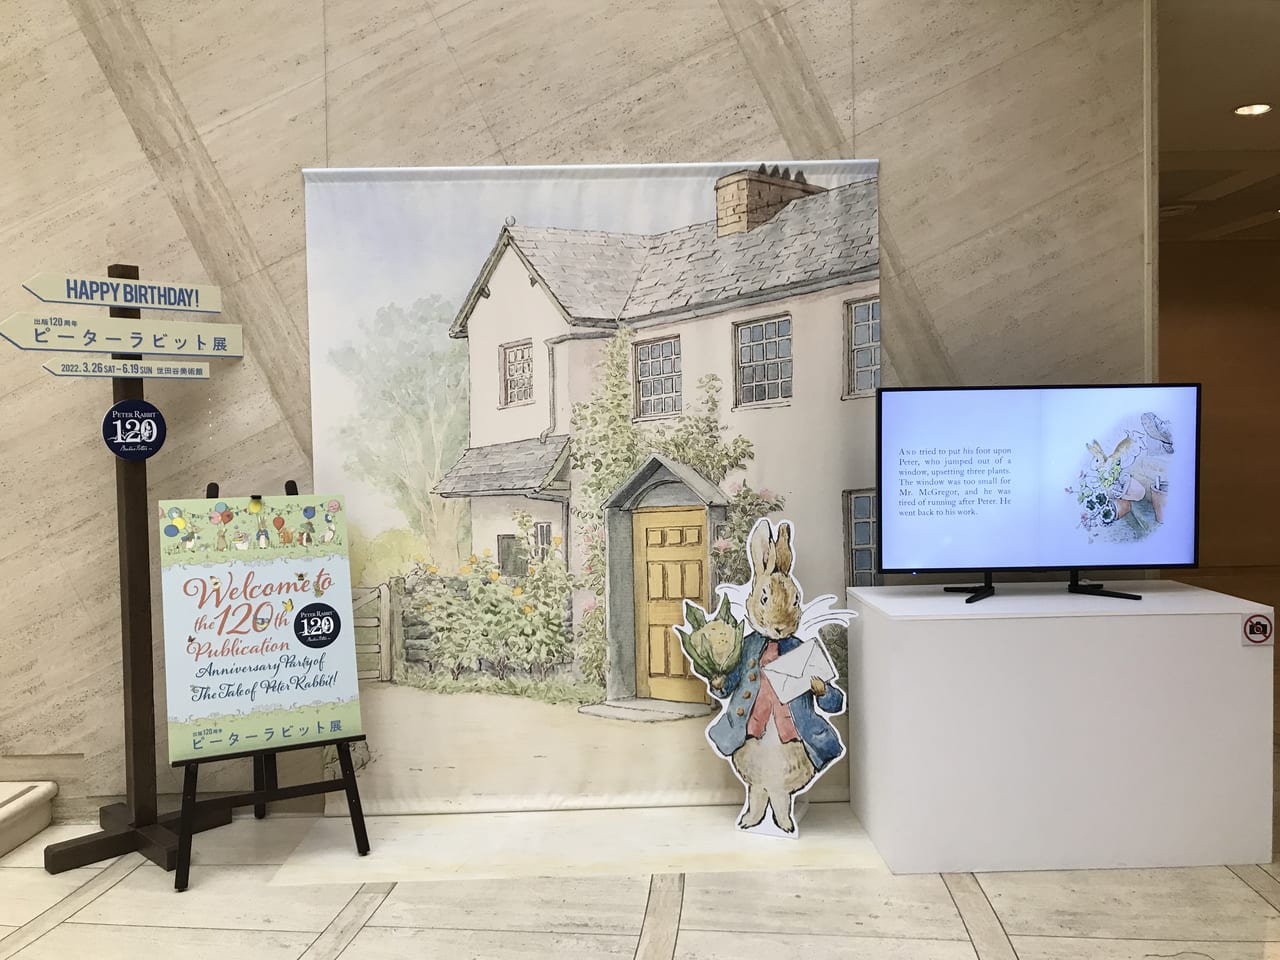 世田谷美術館で「出版120周年ピーターラビット展」が2022年3月26日〜6月19日まで開催です。